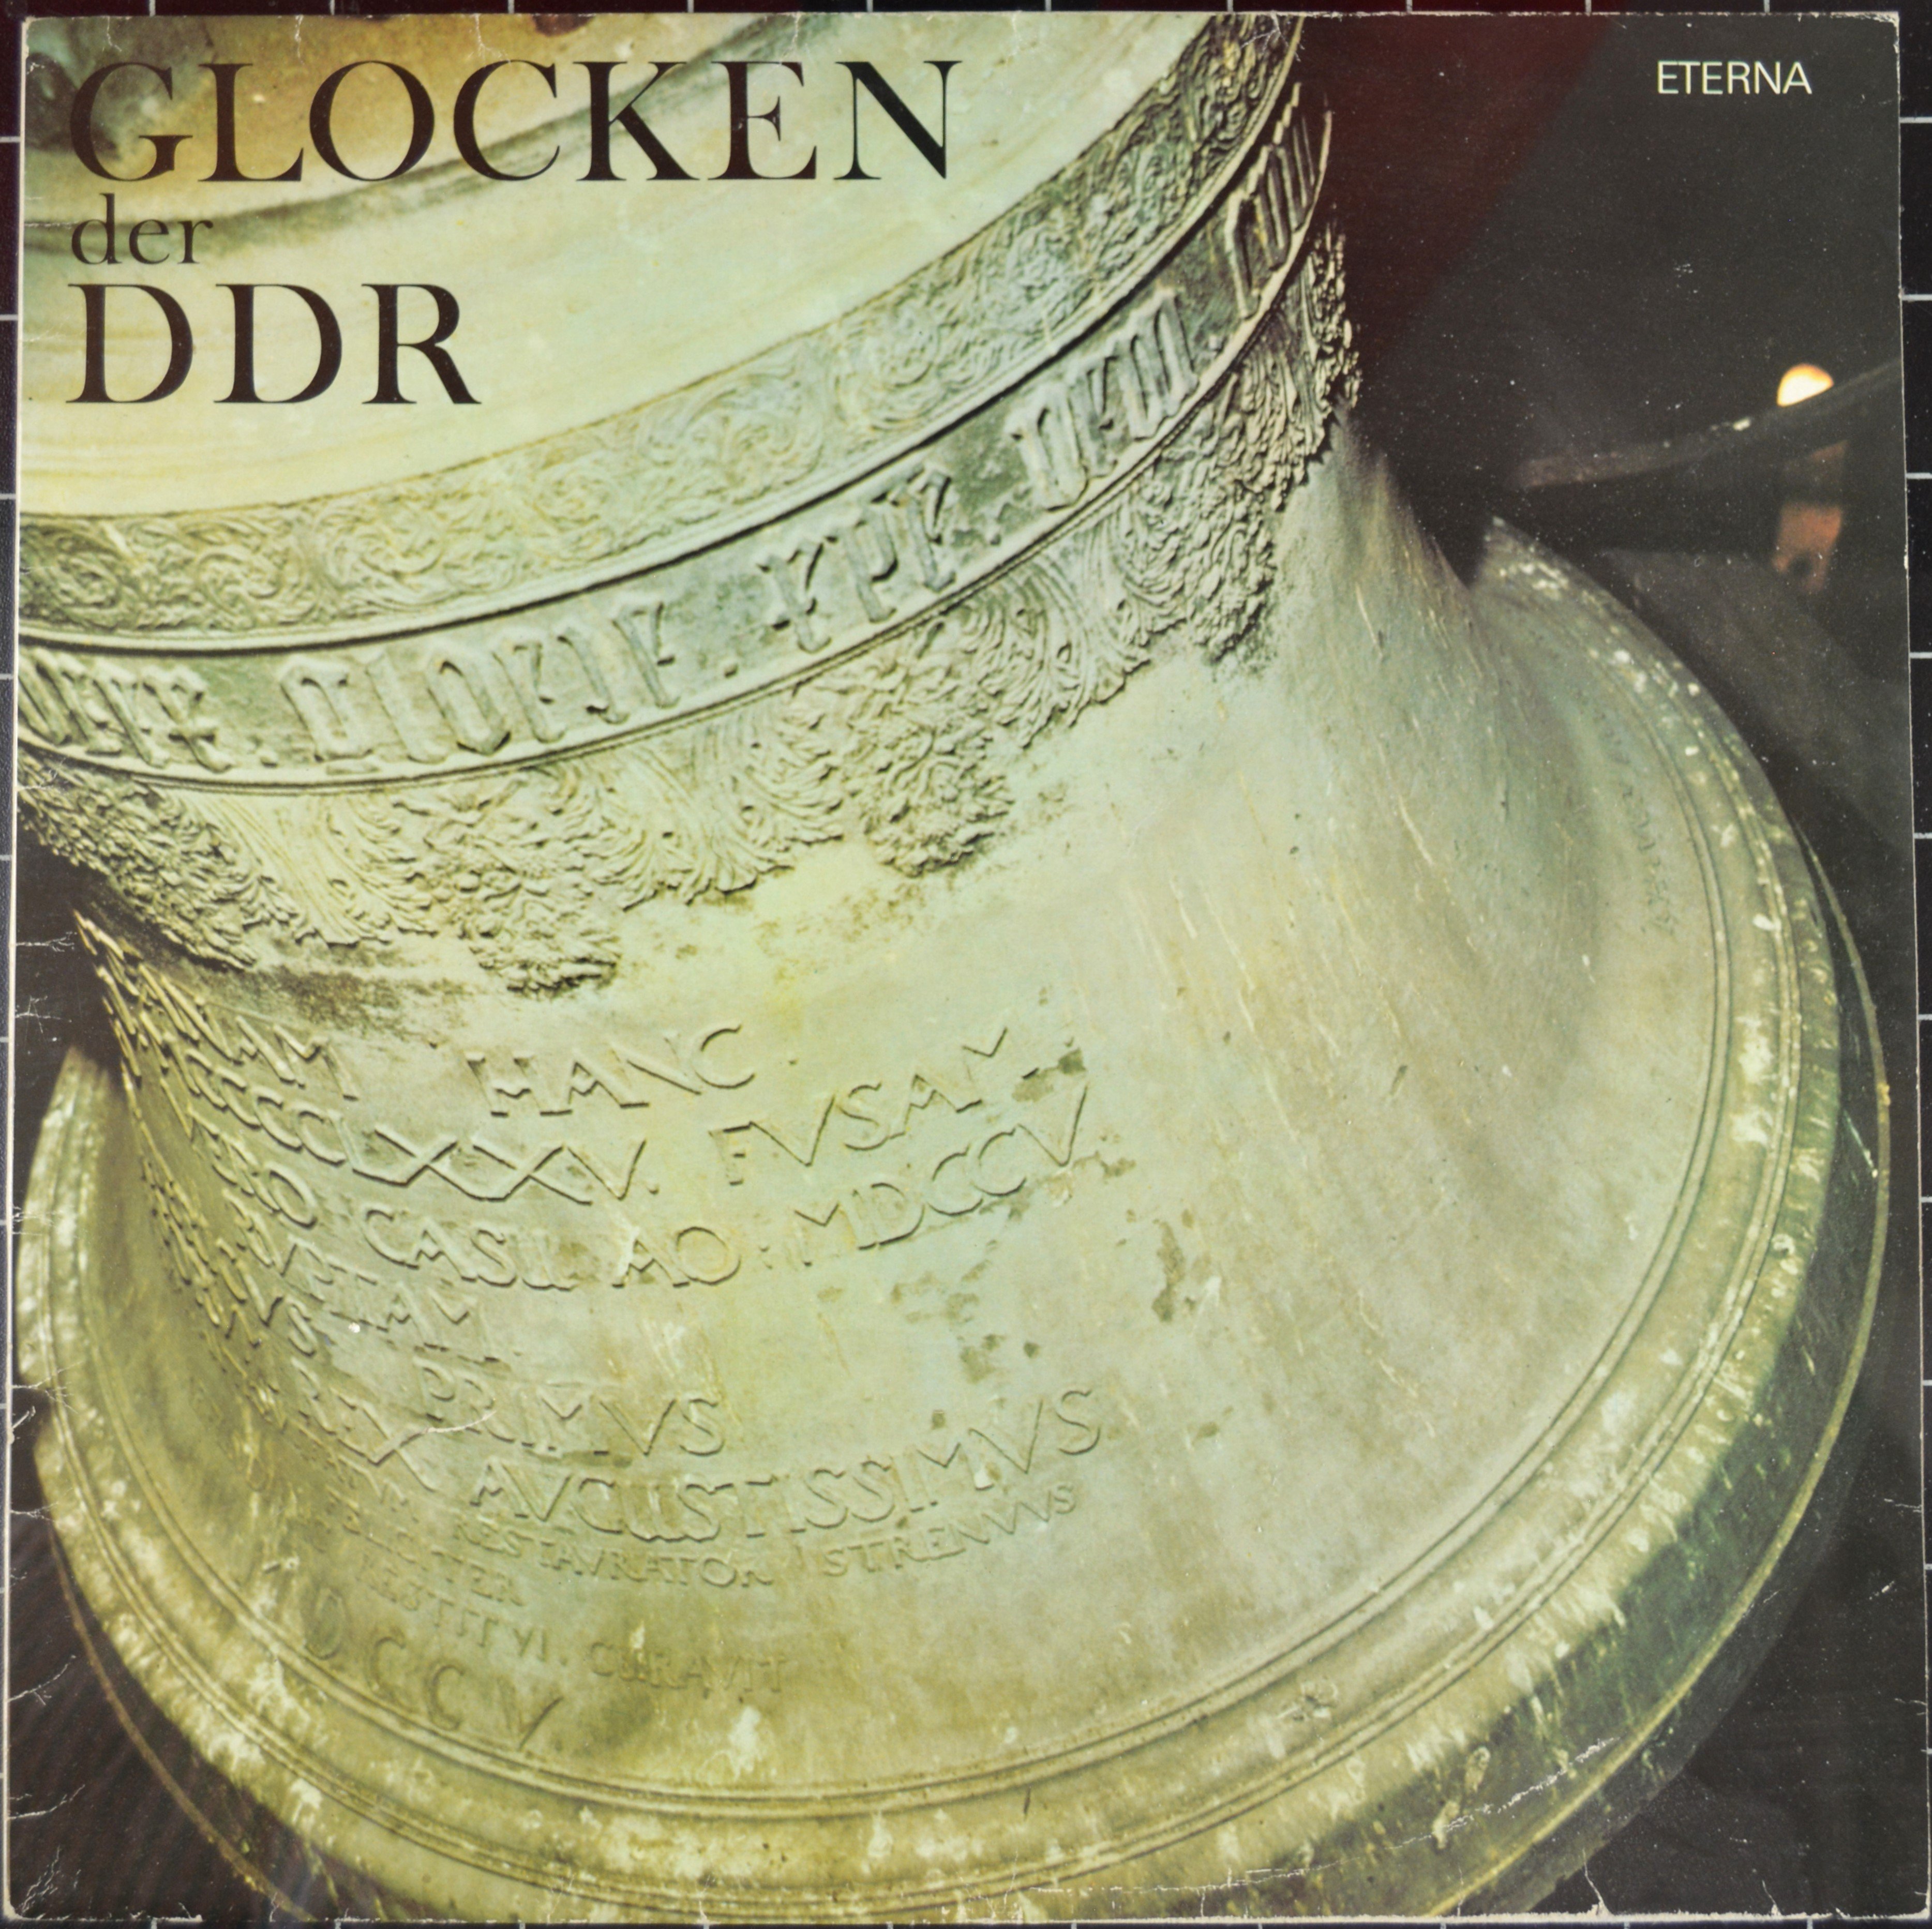 Hülle einer Vinyl-Platte: Glocken der DDR (DDR Geschichtsmuseum im Dokumentationszentrum Perleberg CC BY-SA)